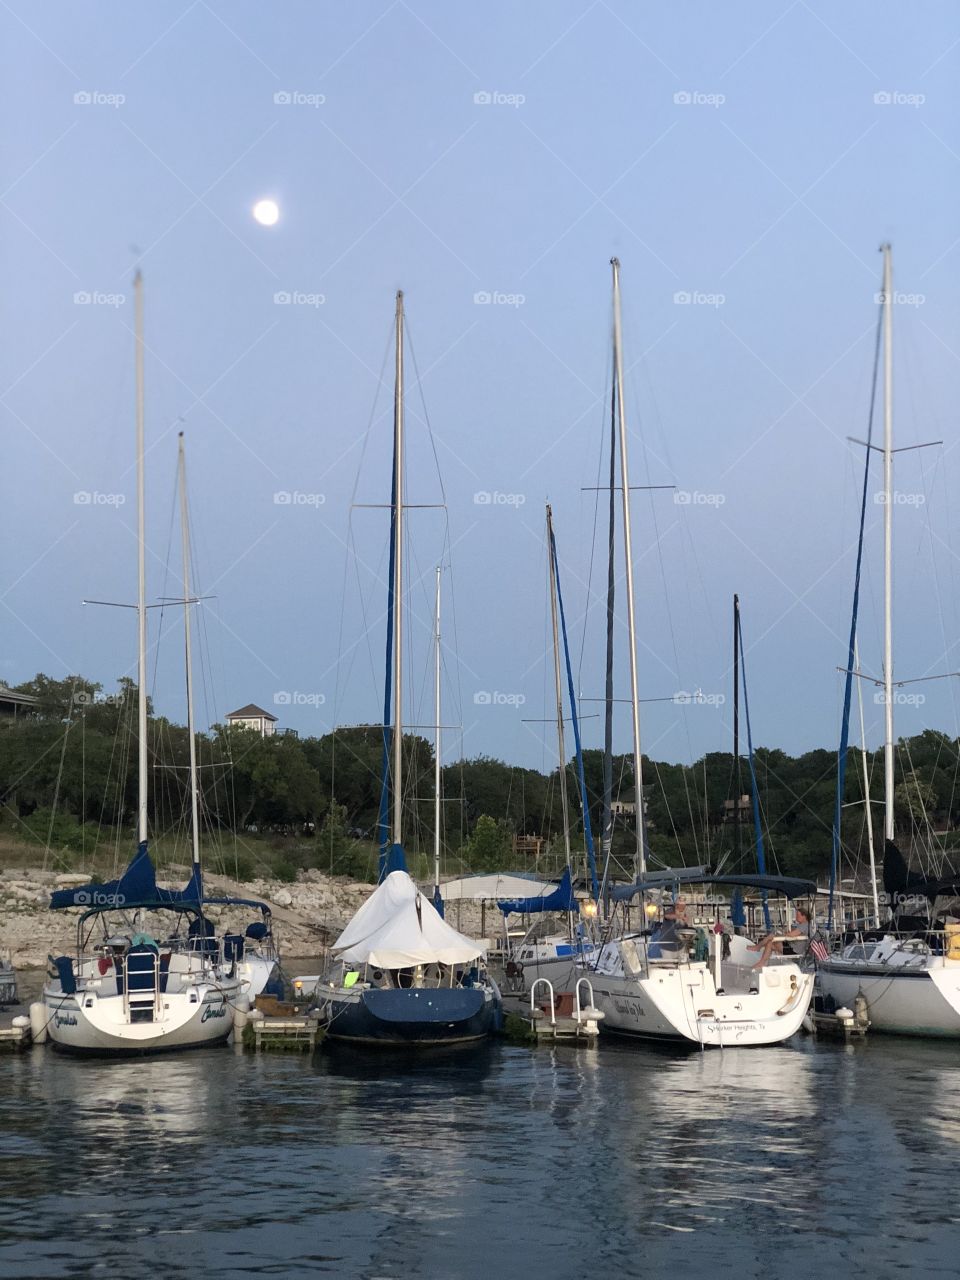 Sailboats by the lake